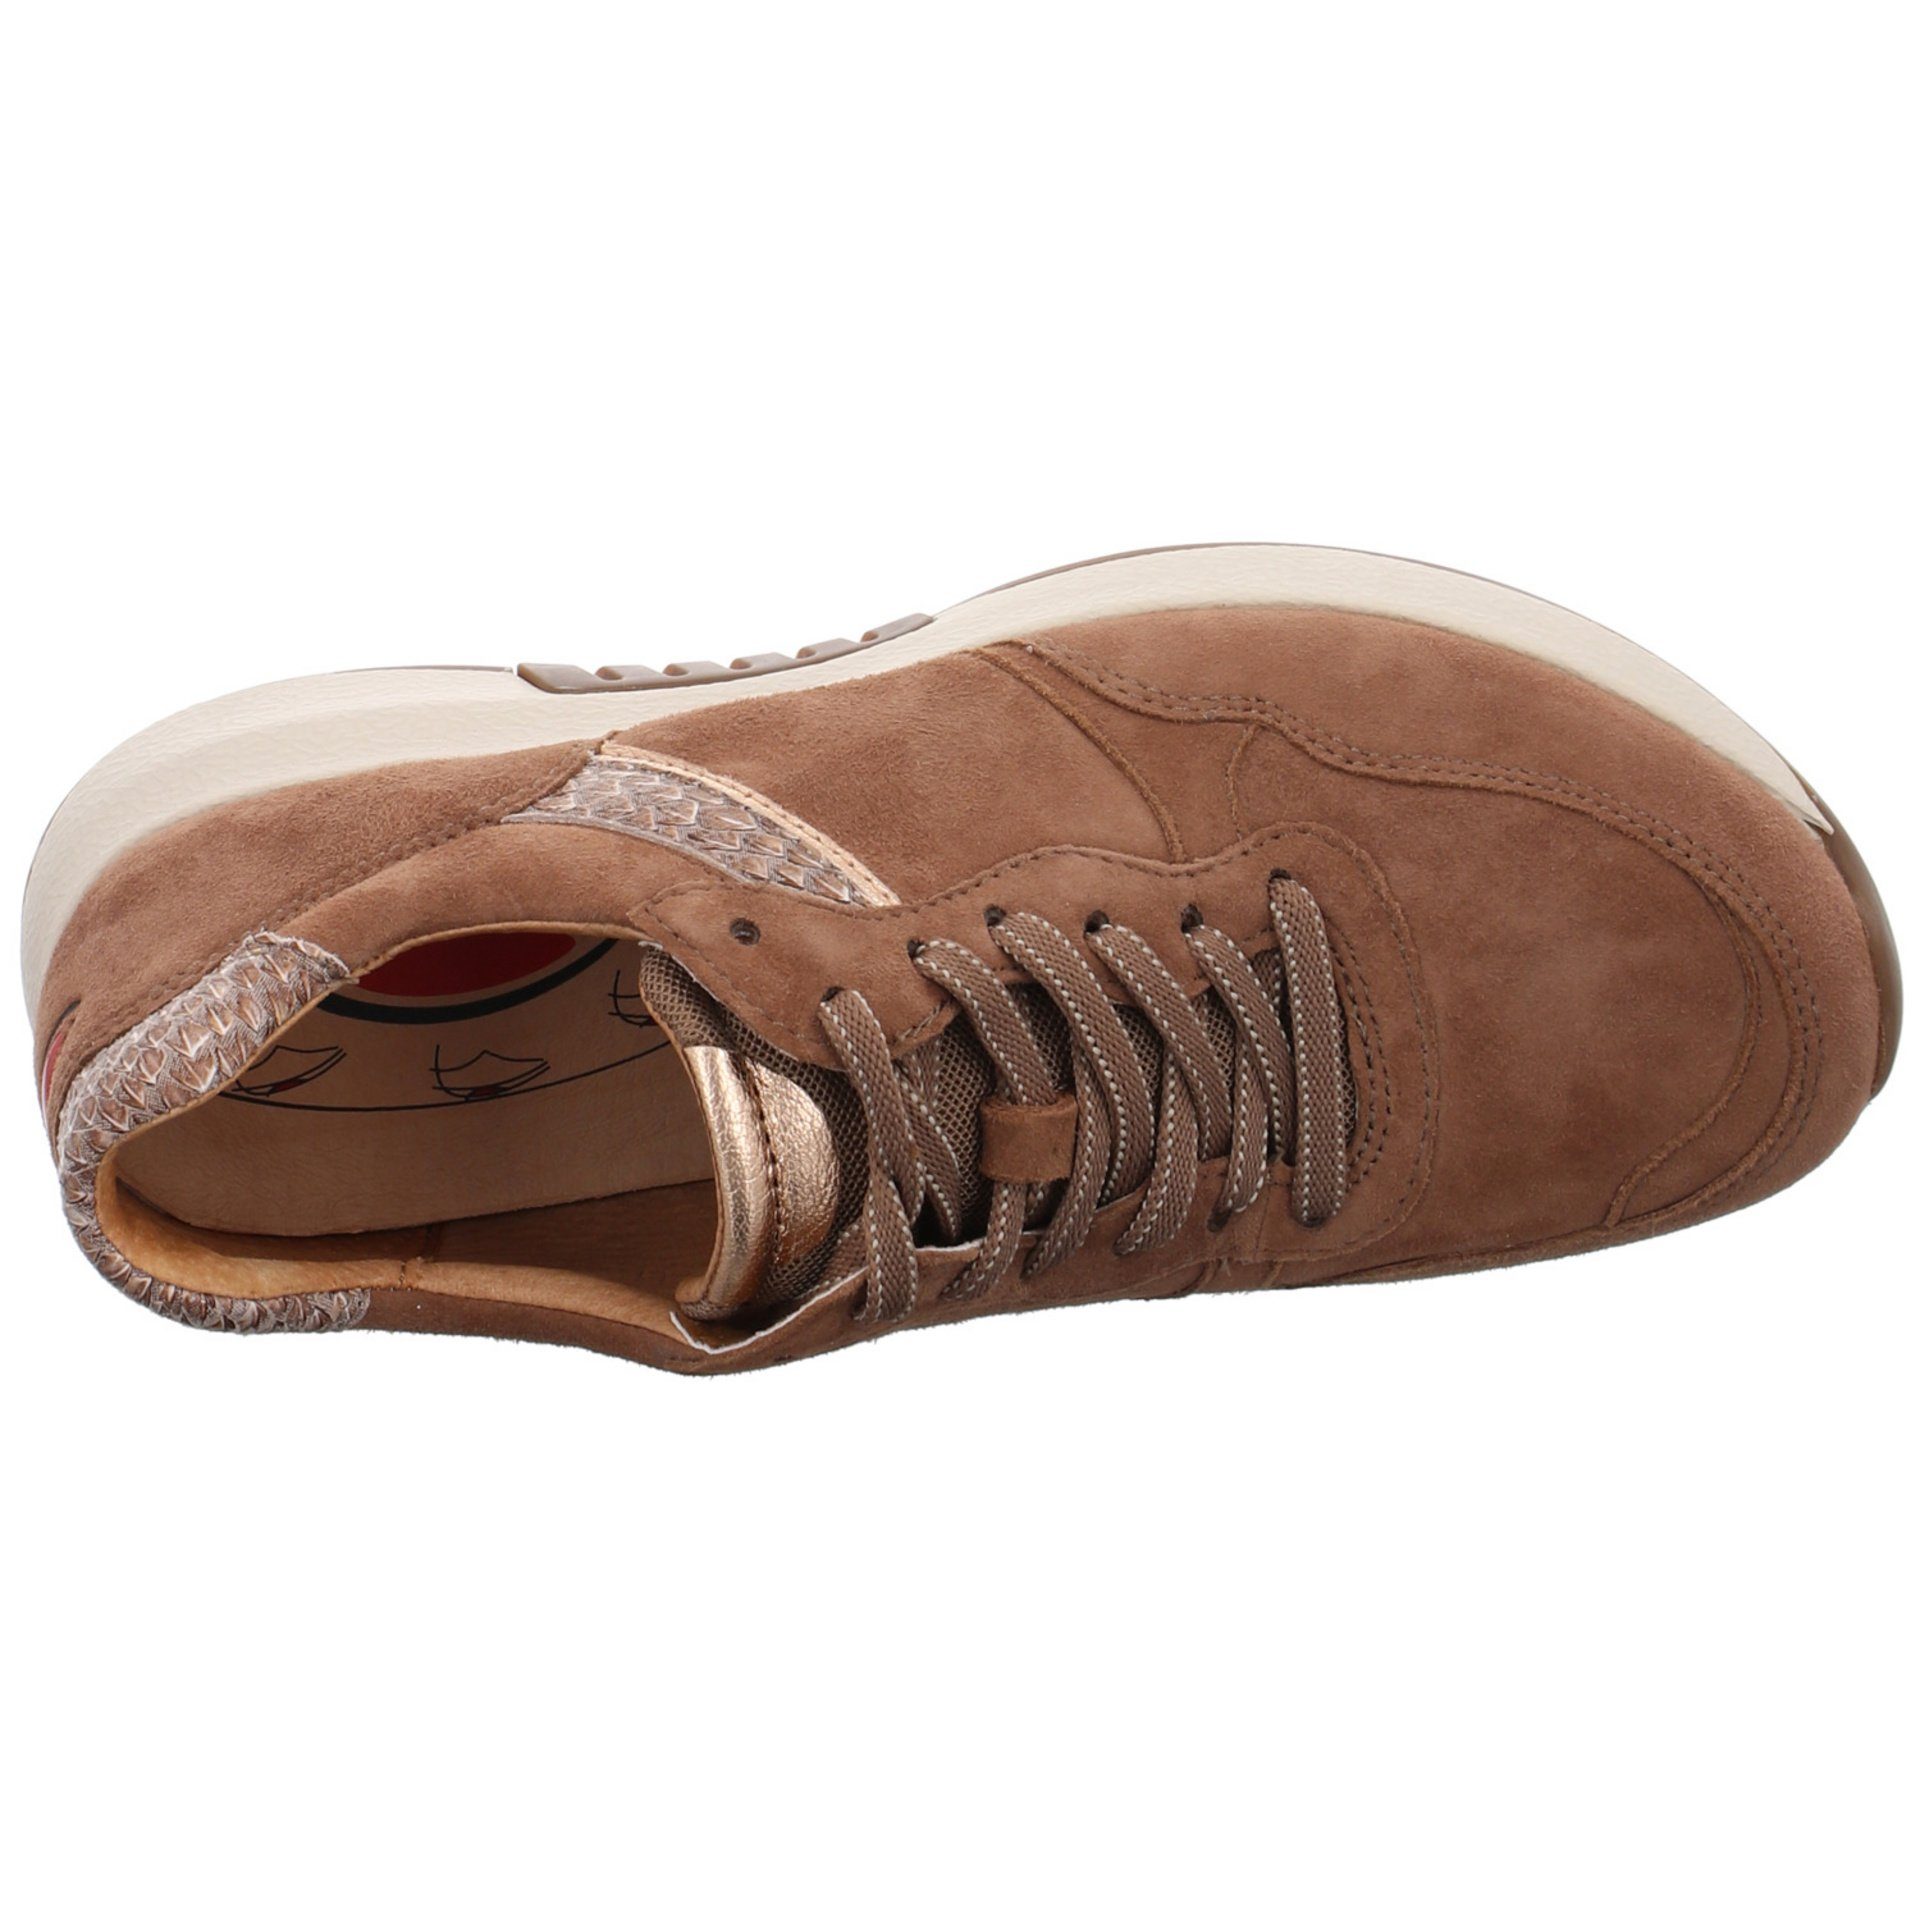 Gabor Sneaker (muskat/rame) Braun Rollingsoft Schnürschuh Damen Sneaker Textil Schuhe